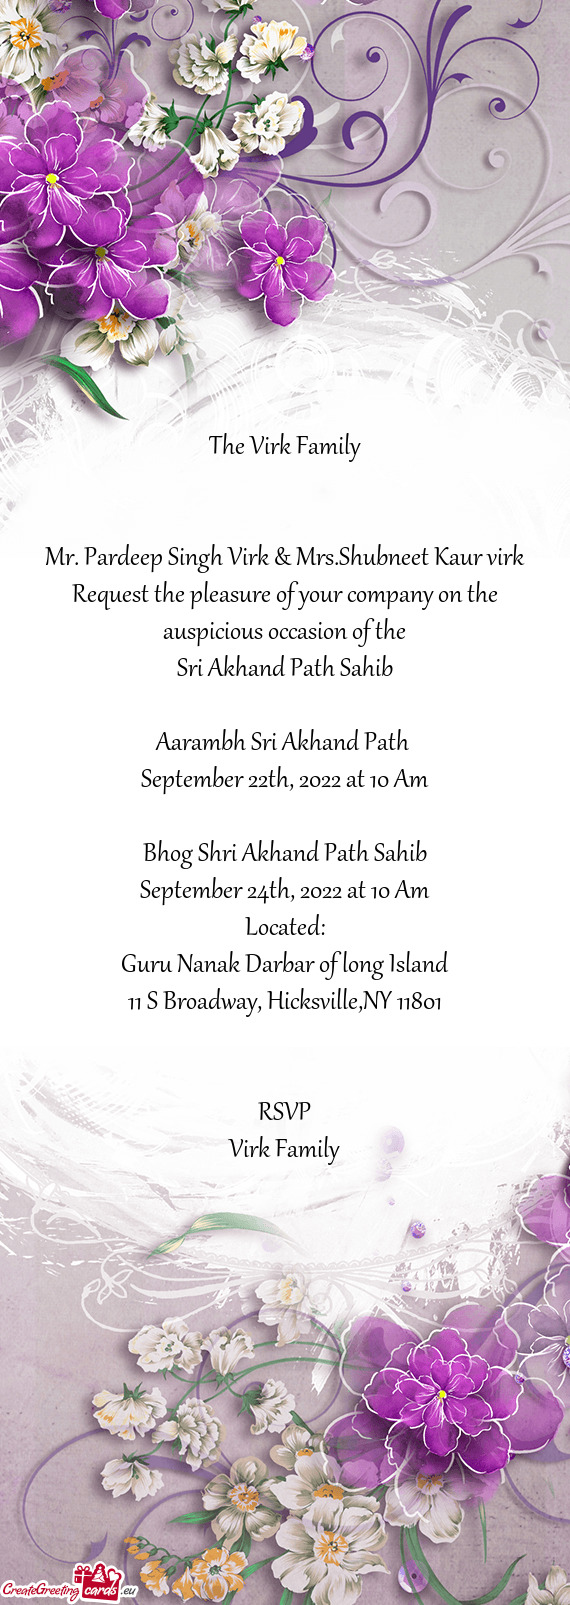 Mr. Pardeep Singh Virk & Mrs.Shubneet Kaur virk